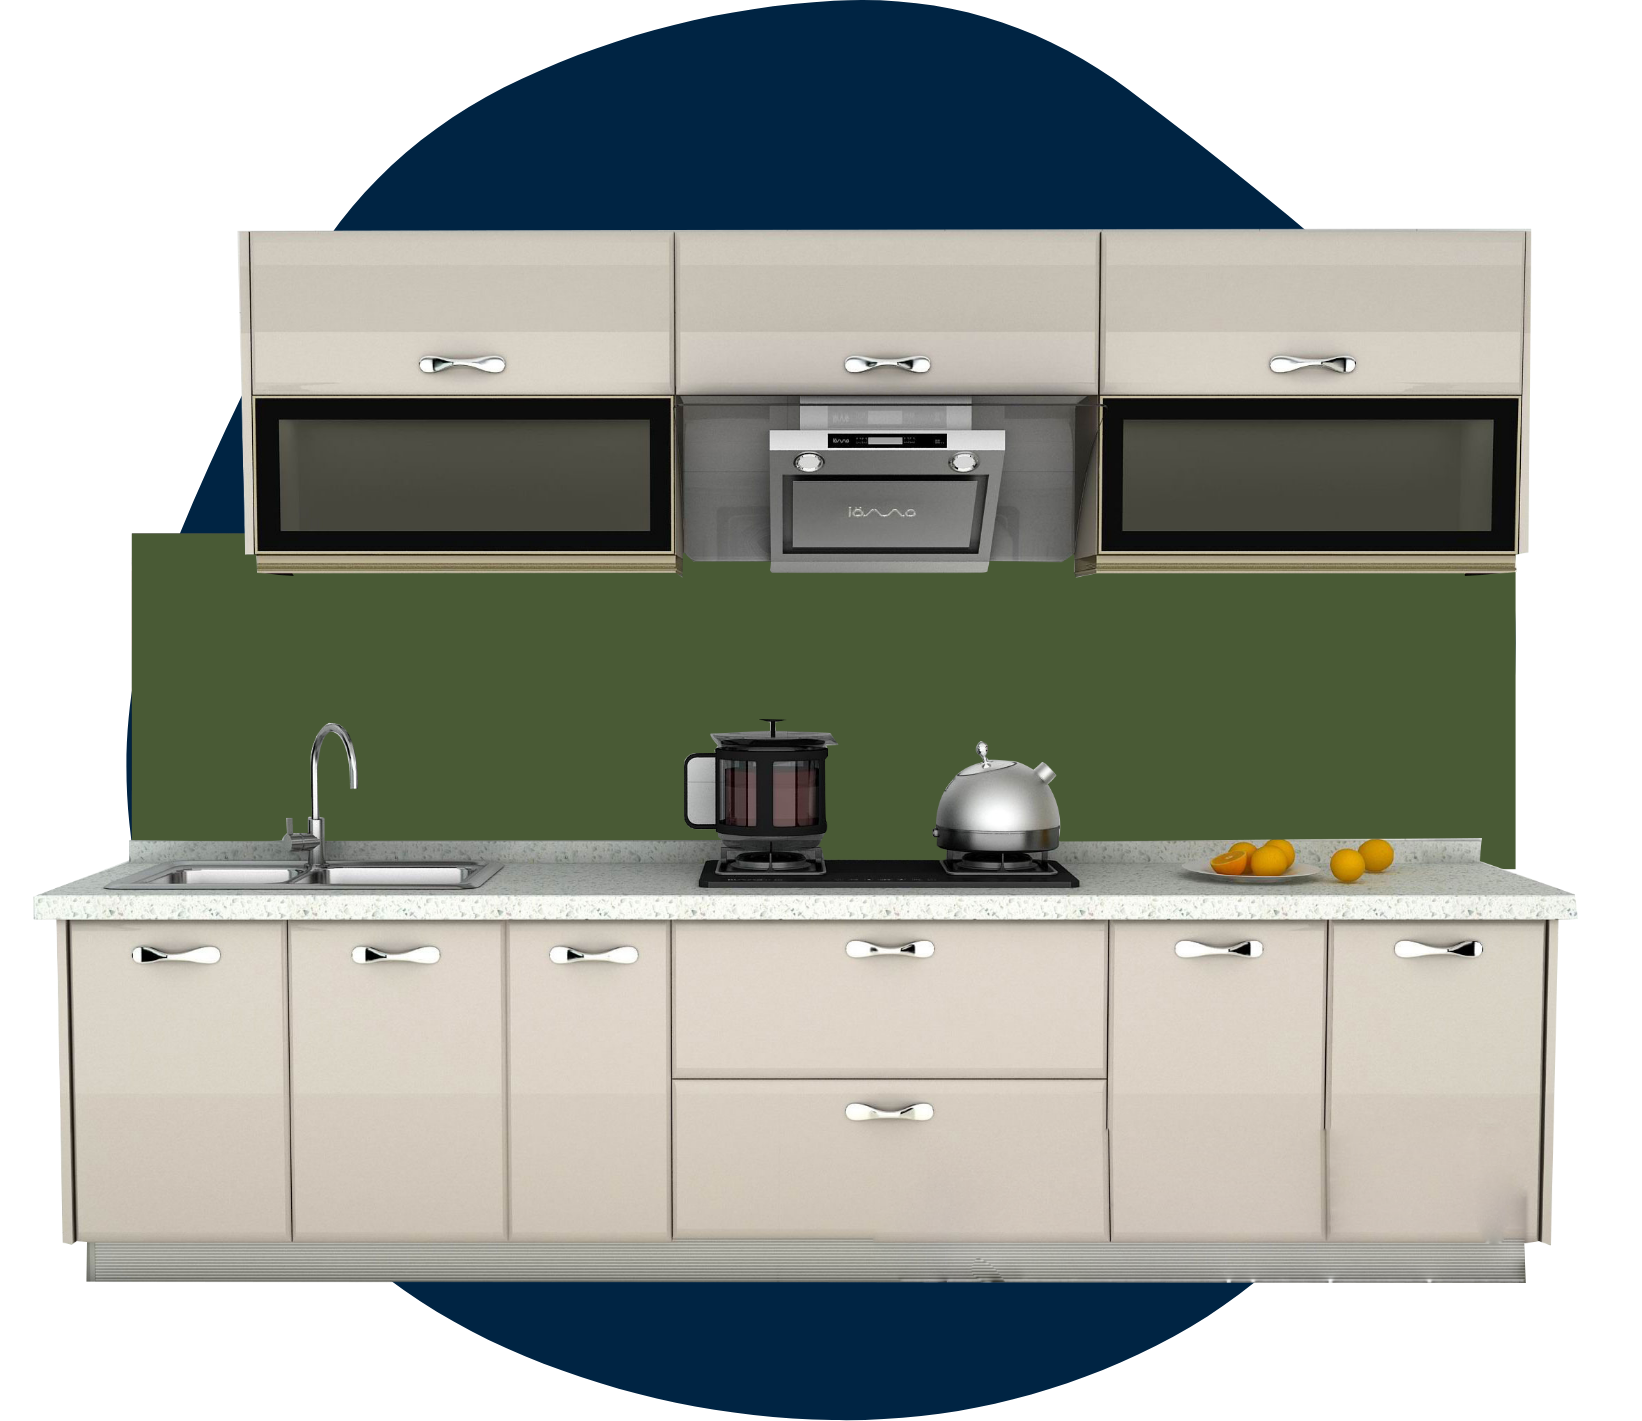 Küchenrückwand in Küche mit unifarbenem Motiv